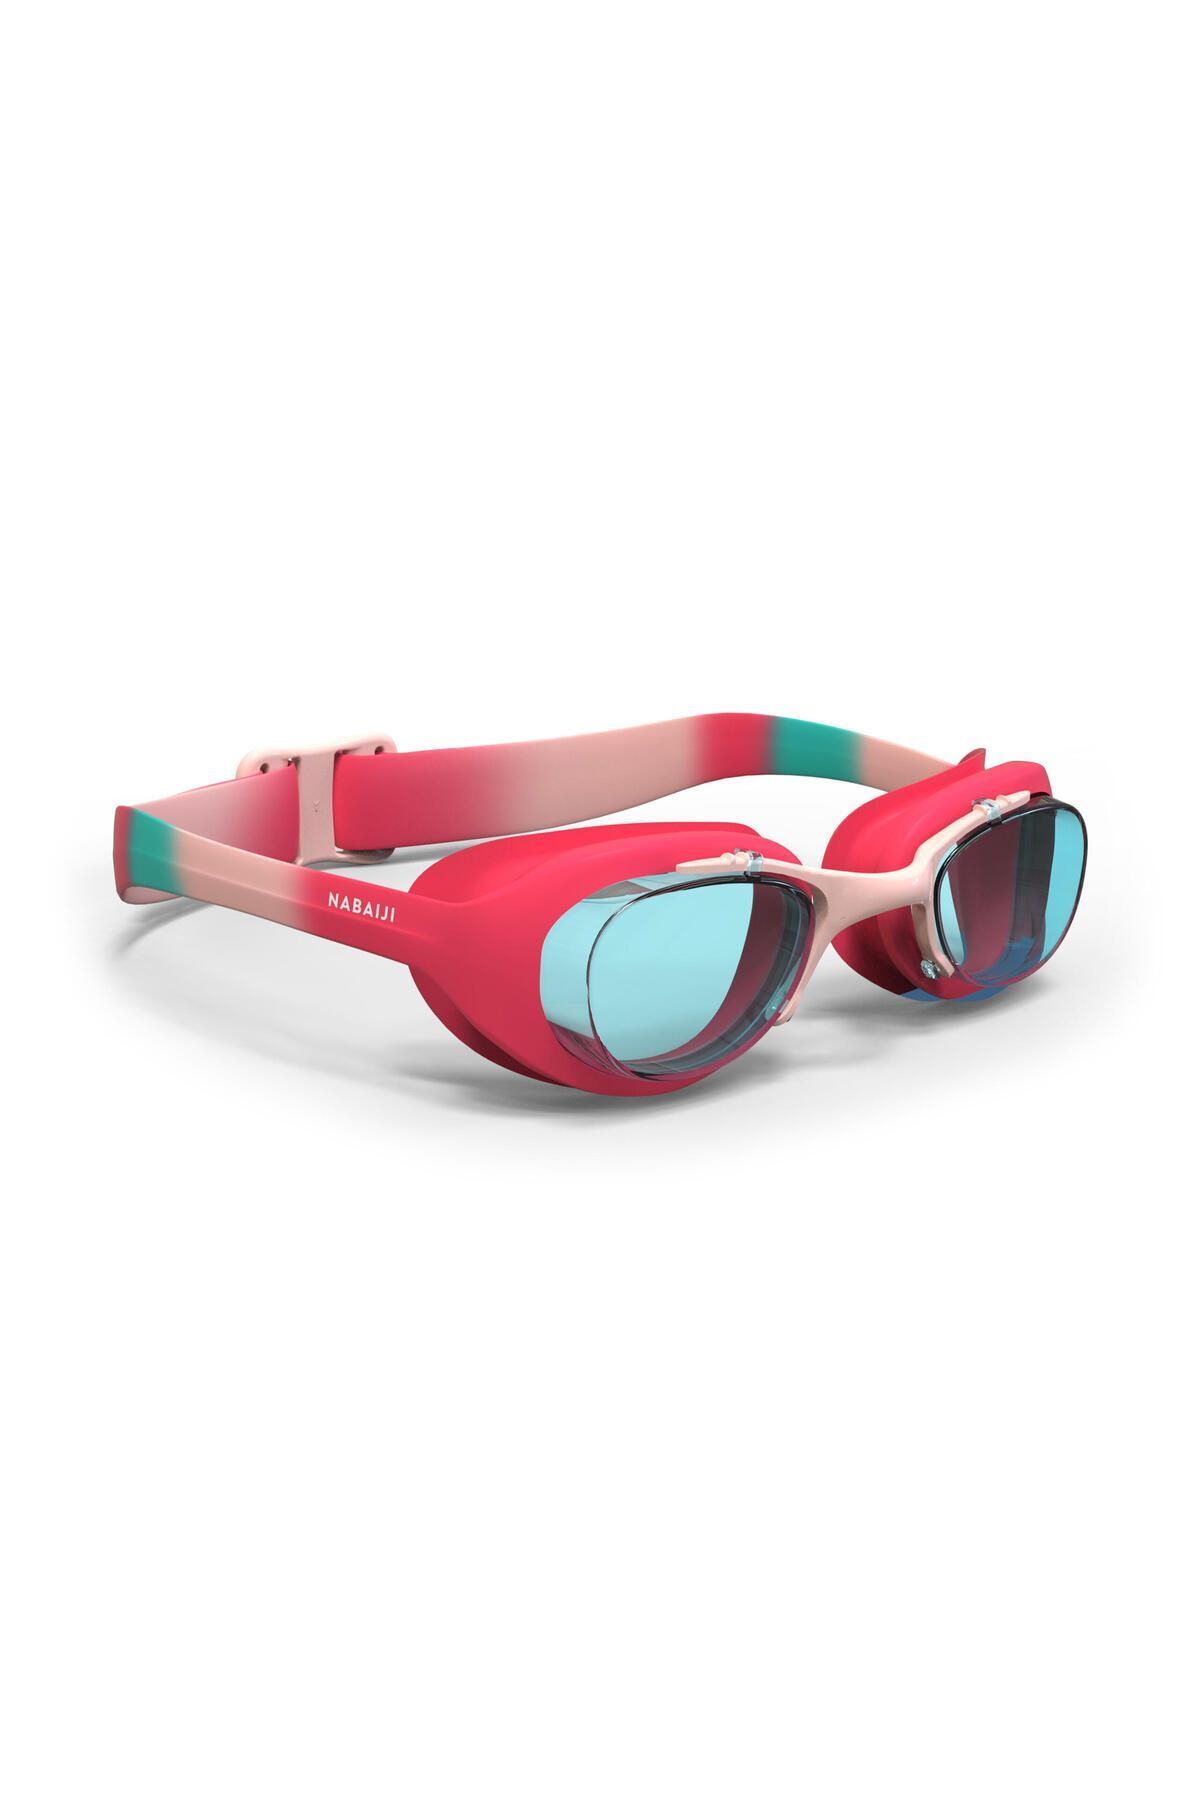 Decathlon Nabaiji Yüzücü Gözlüğü - S Boy - Şeffaf Camlar - Pembe - 100 Xbase Dye